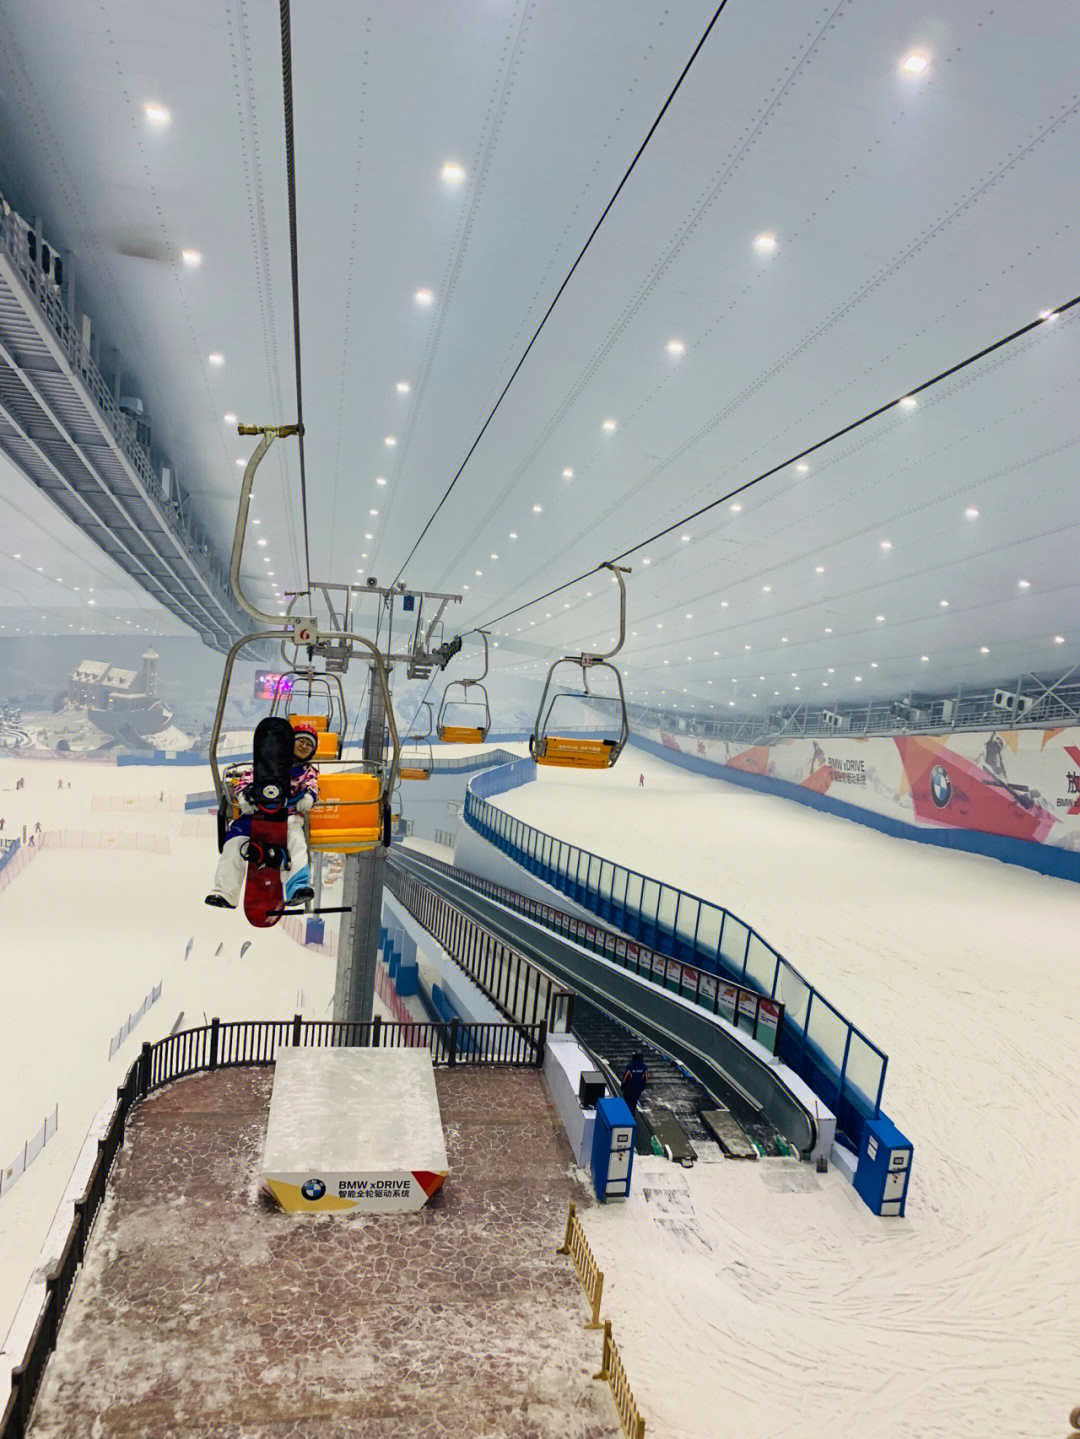 哈尔滨融创滑雪场坡度图片